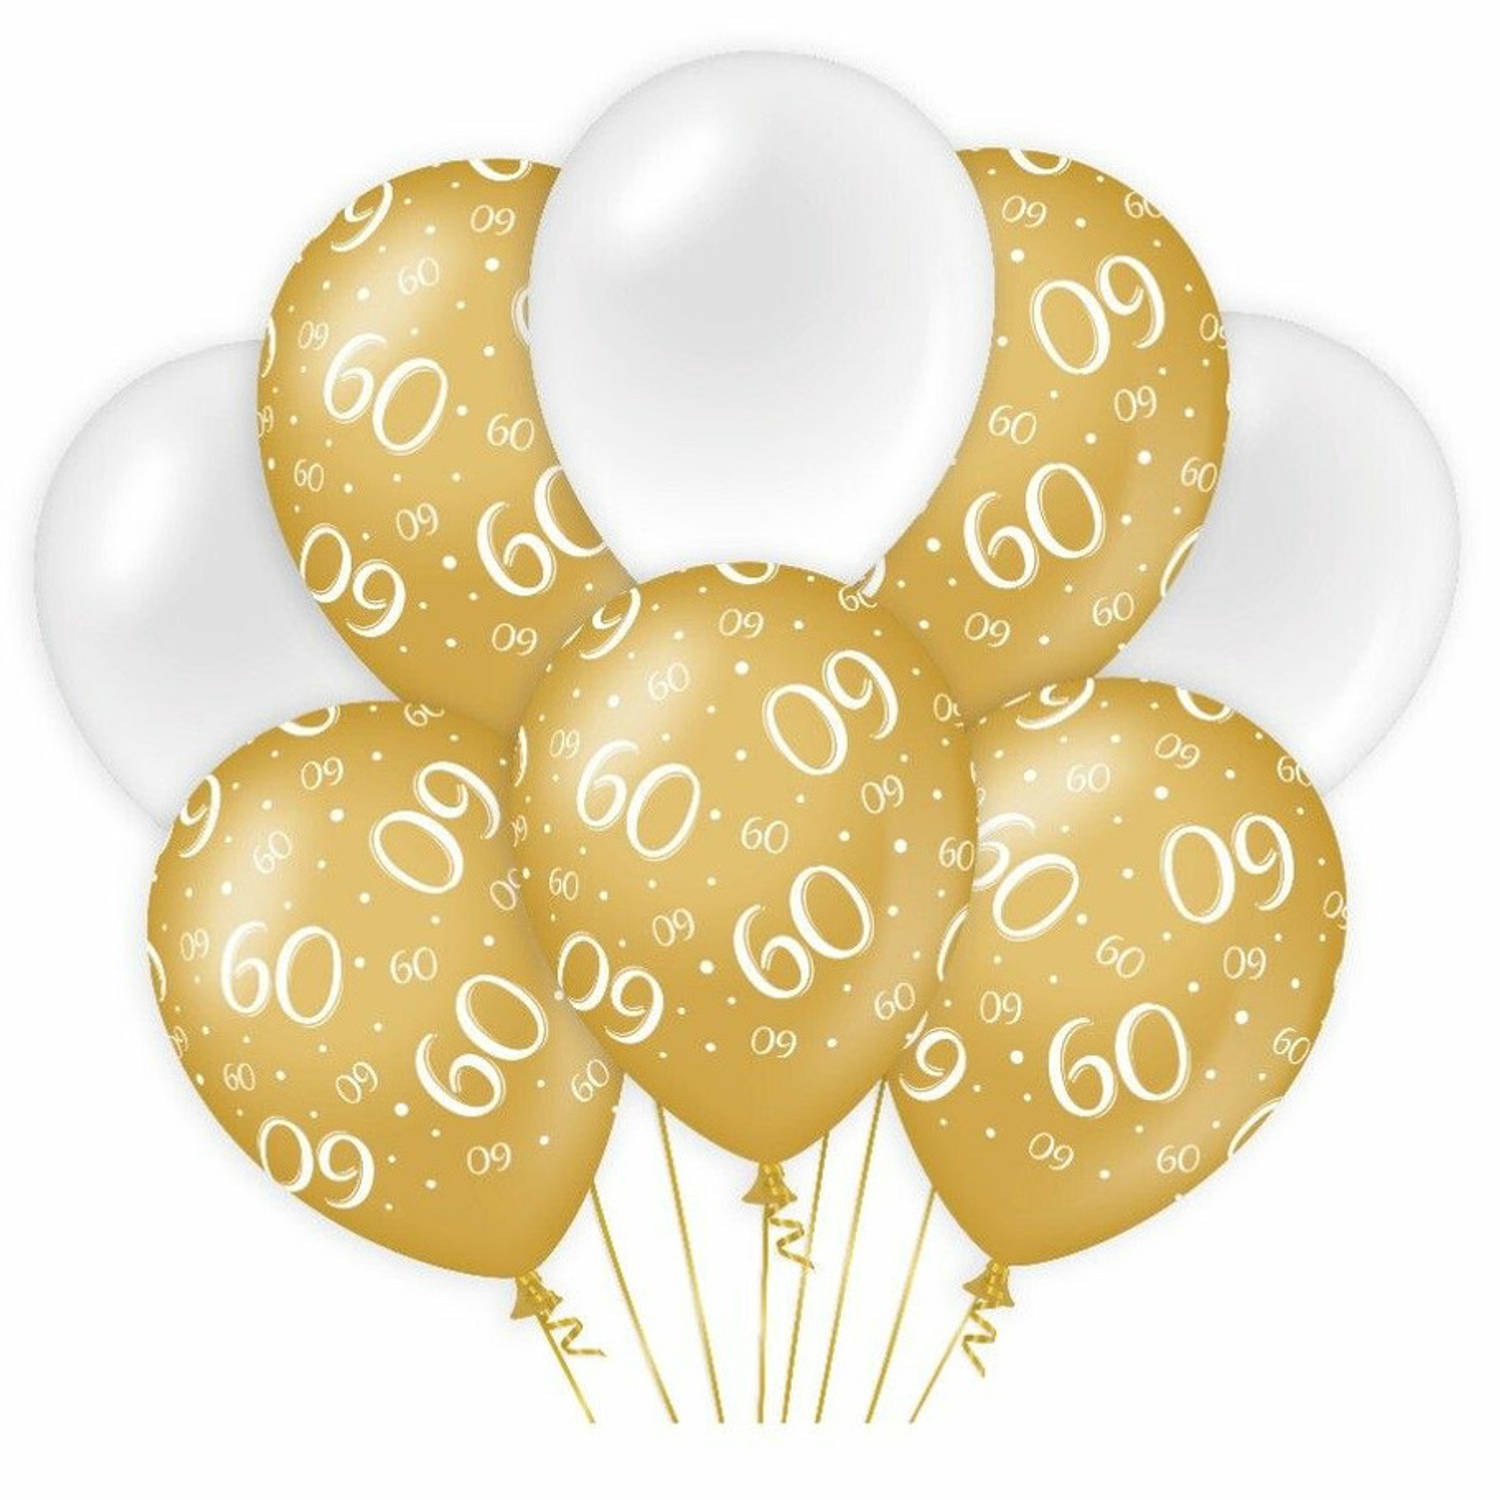 Paperdreams 60 jaar leeftijd thema Ballonnen - 24x - goud/wit - Verjaardag feestartikelen - Ballonnen